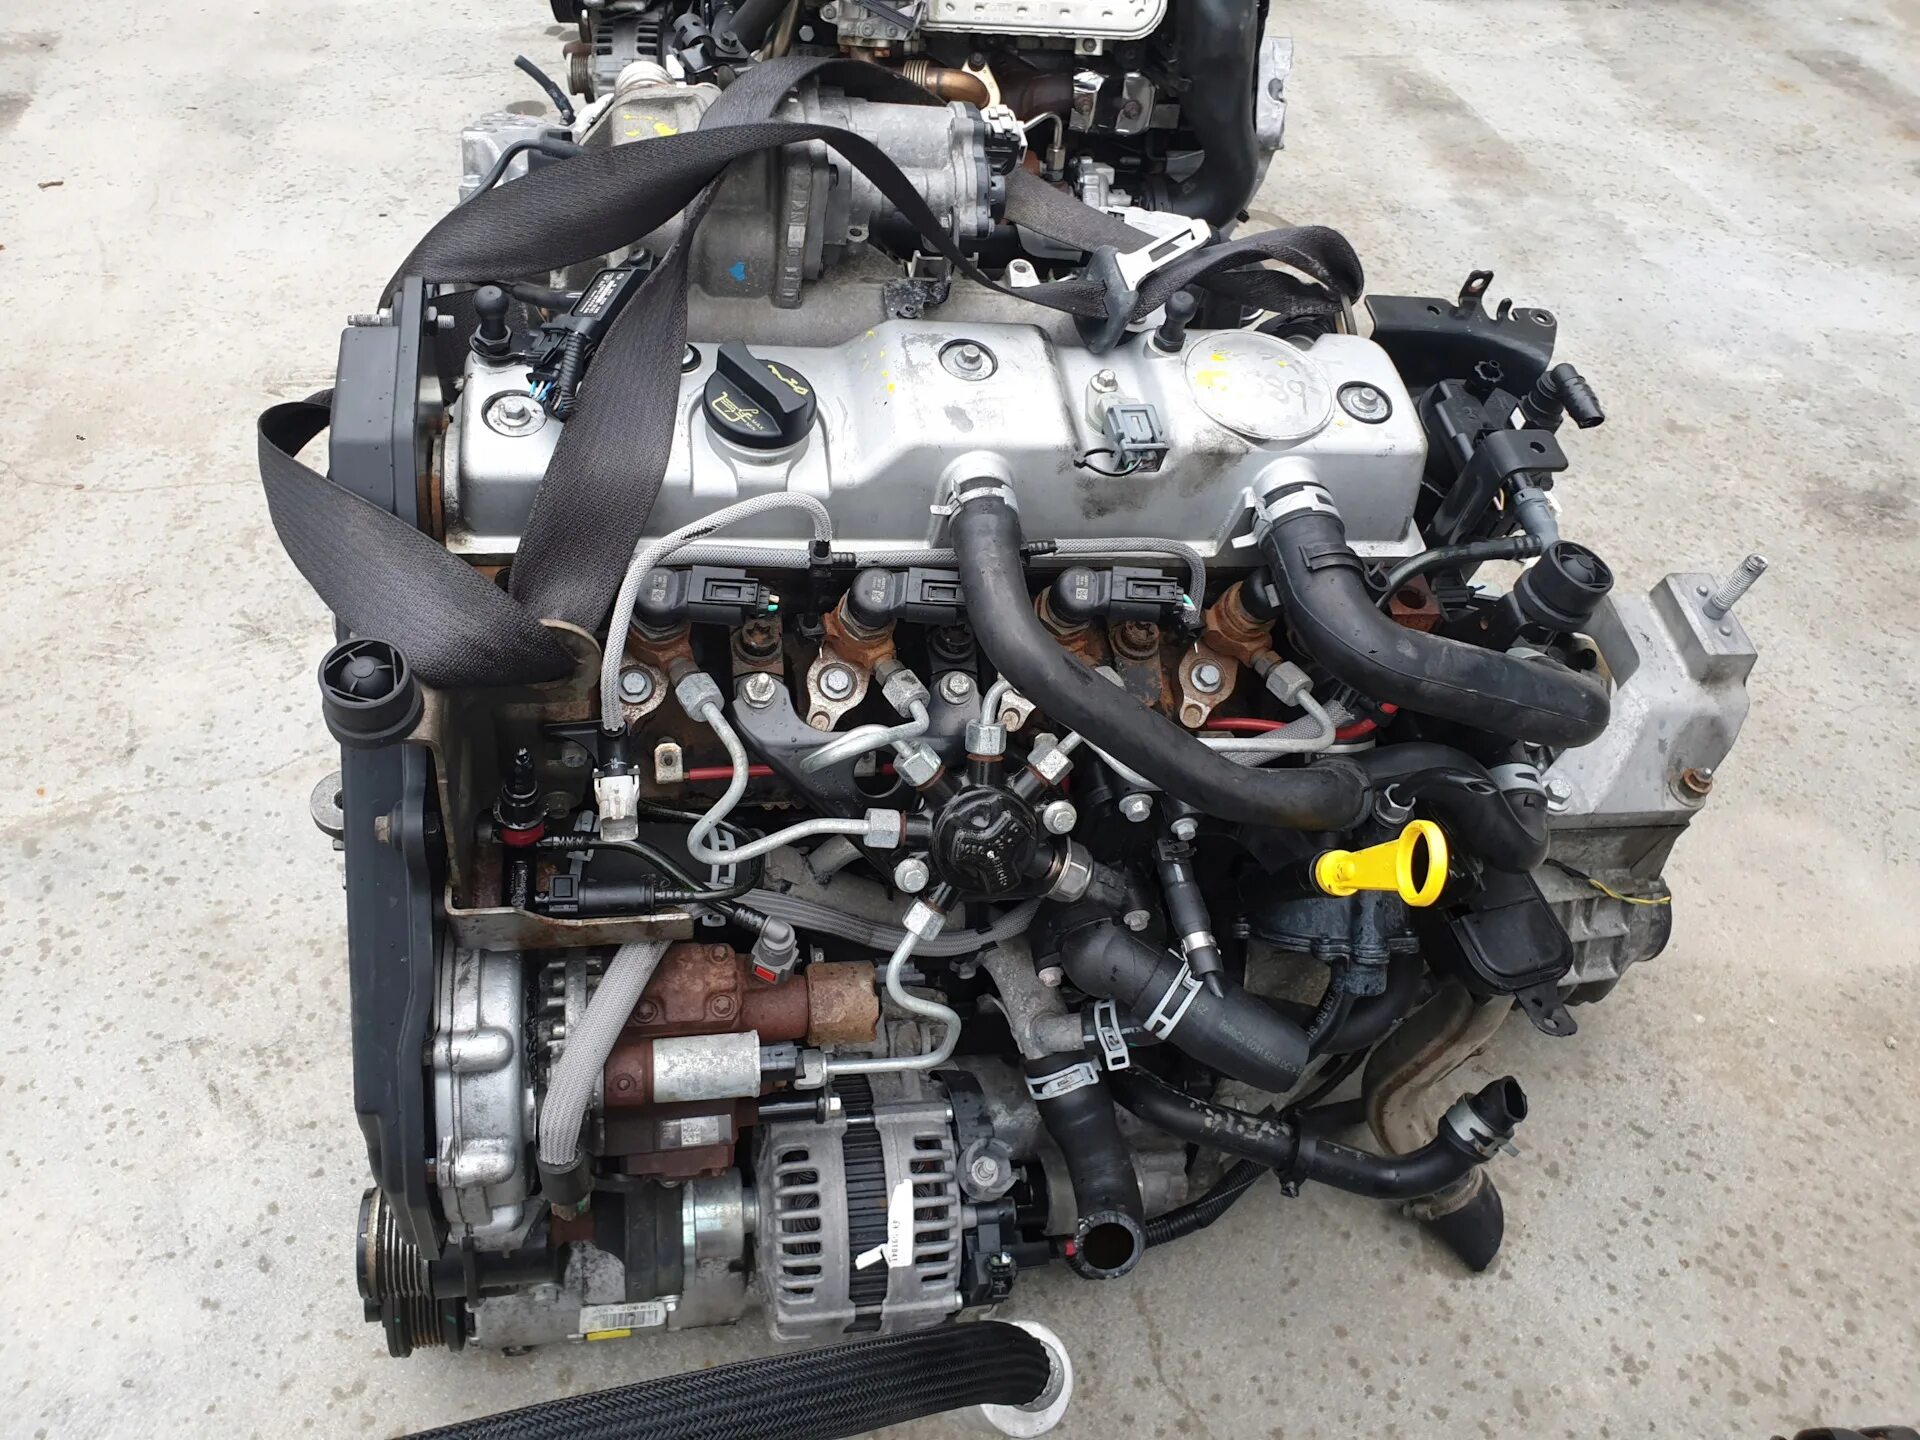 Двигатель Форд Коннект 1.8 дизель. Форд Транзит Коннект 1.8 дизель. Двигатель Форт Транзит Конект 1.8. Двигатель Ford Tourneo connect 1.8 дизель.